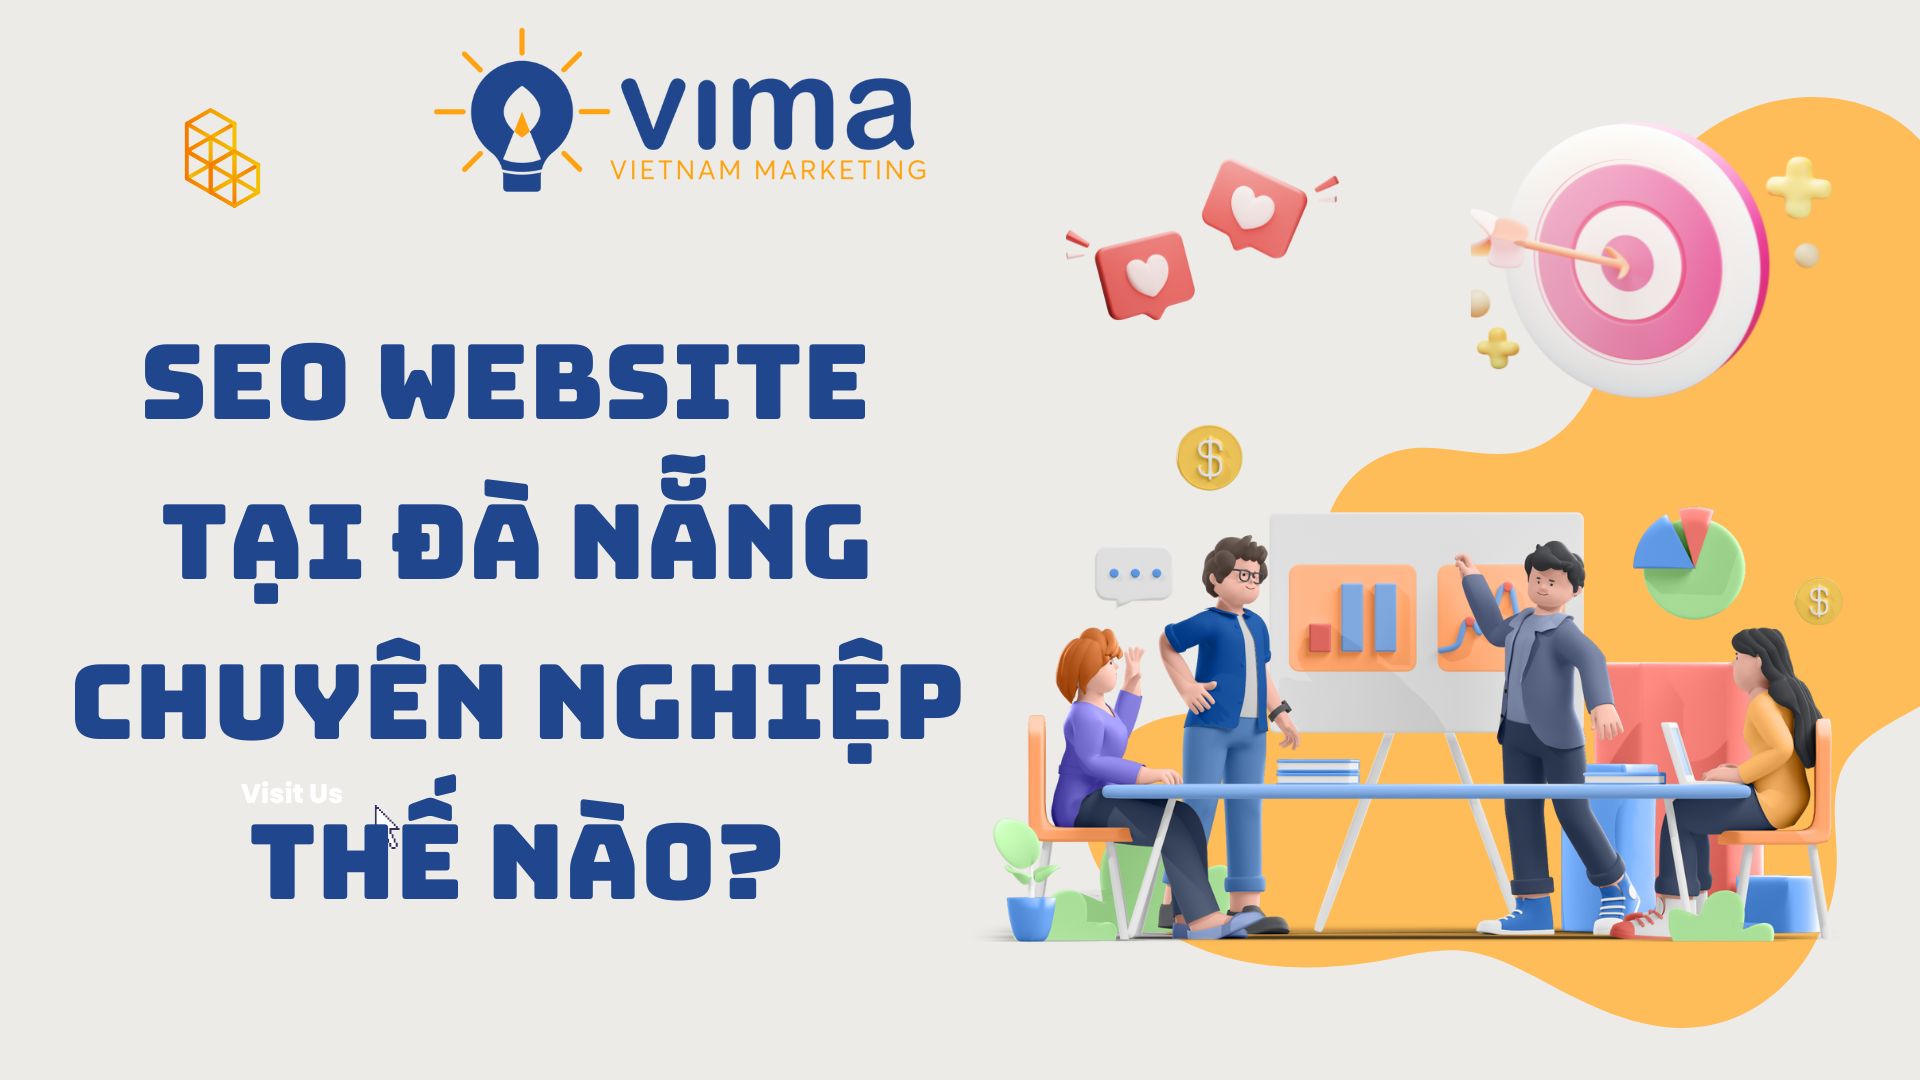 SEO Website tại Đà Nẵng chuyên nghiệp thế nào